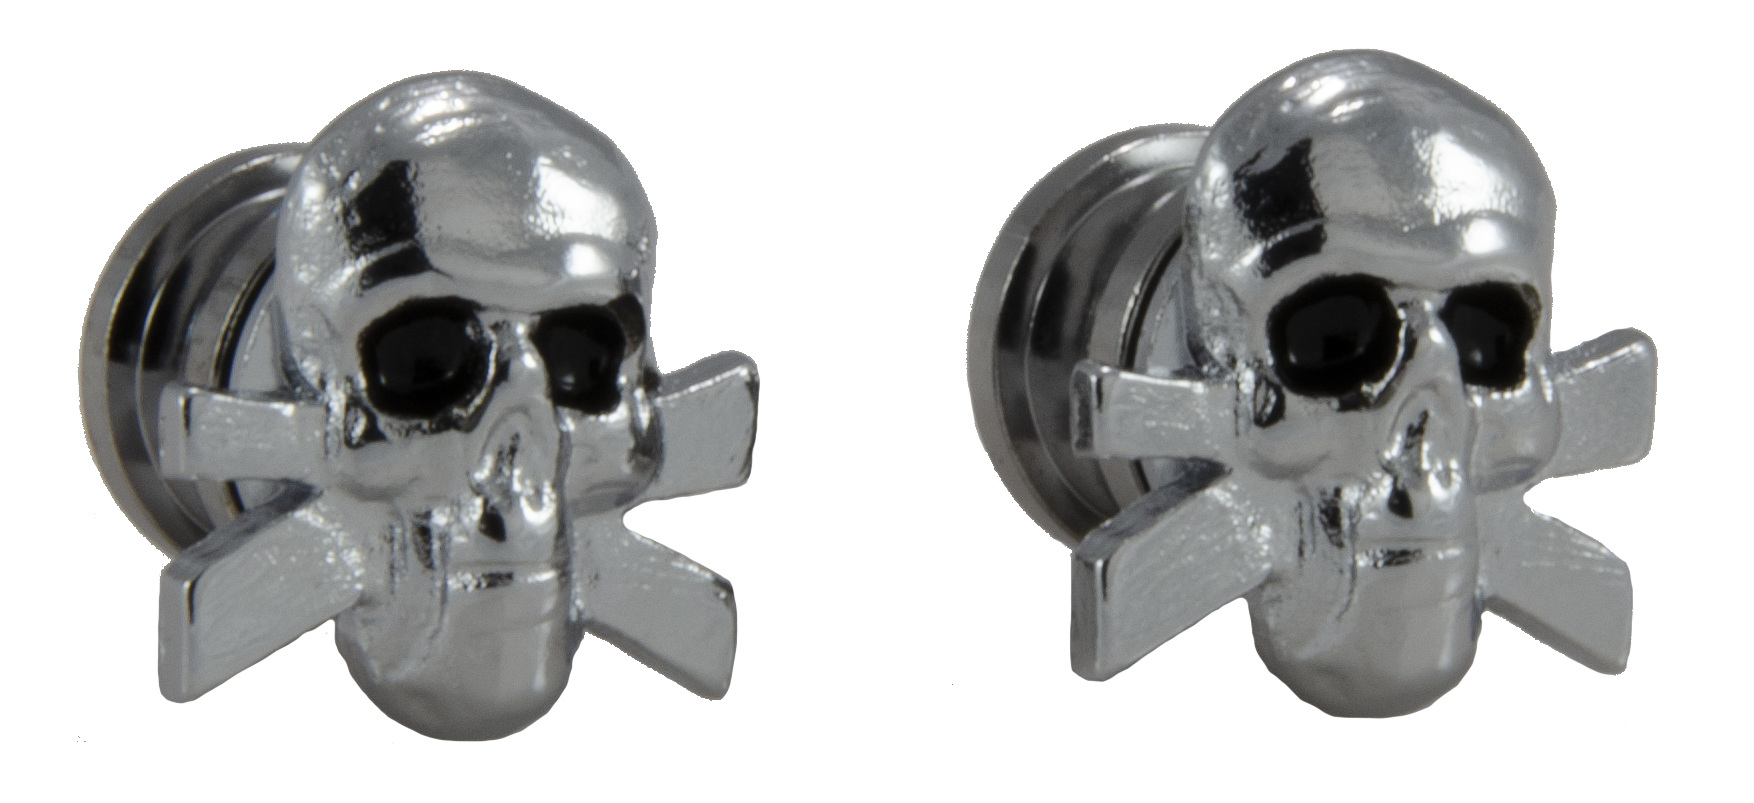 Grover S 610C - Artist Strap Buttons, Skull - Chrome